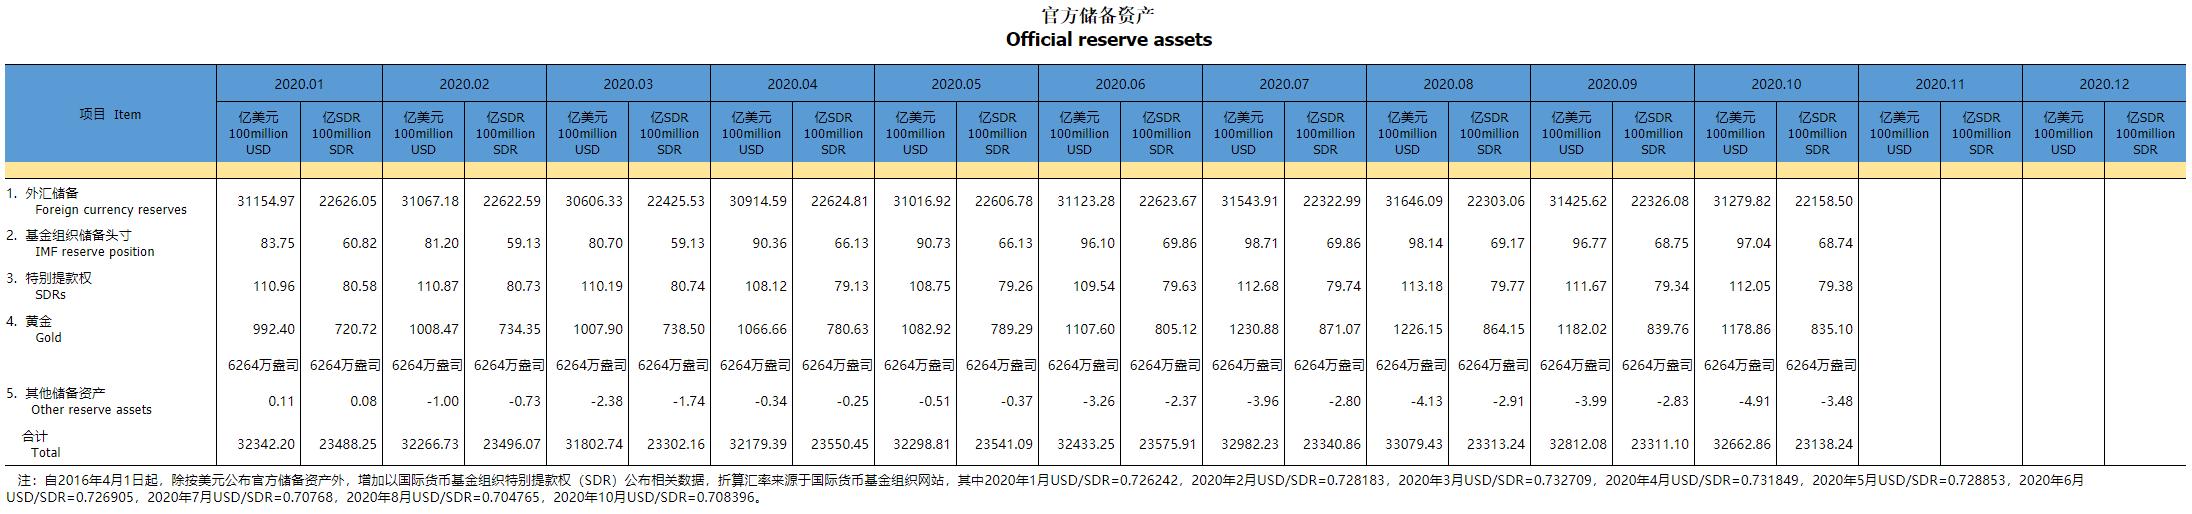 中国10月末外汇储备报3.1280万亿美元